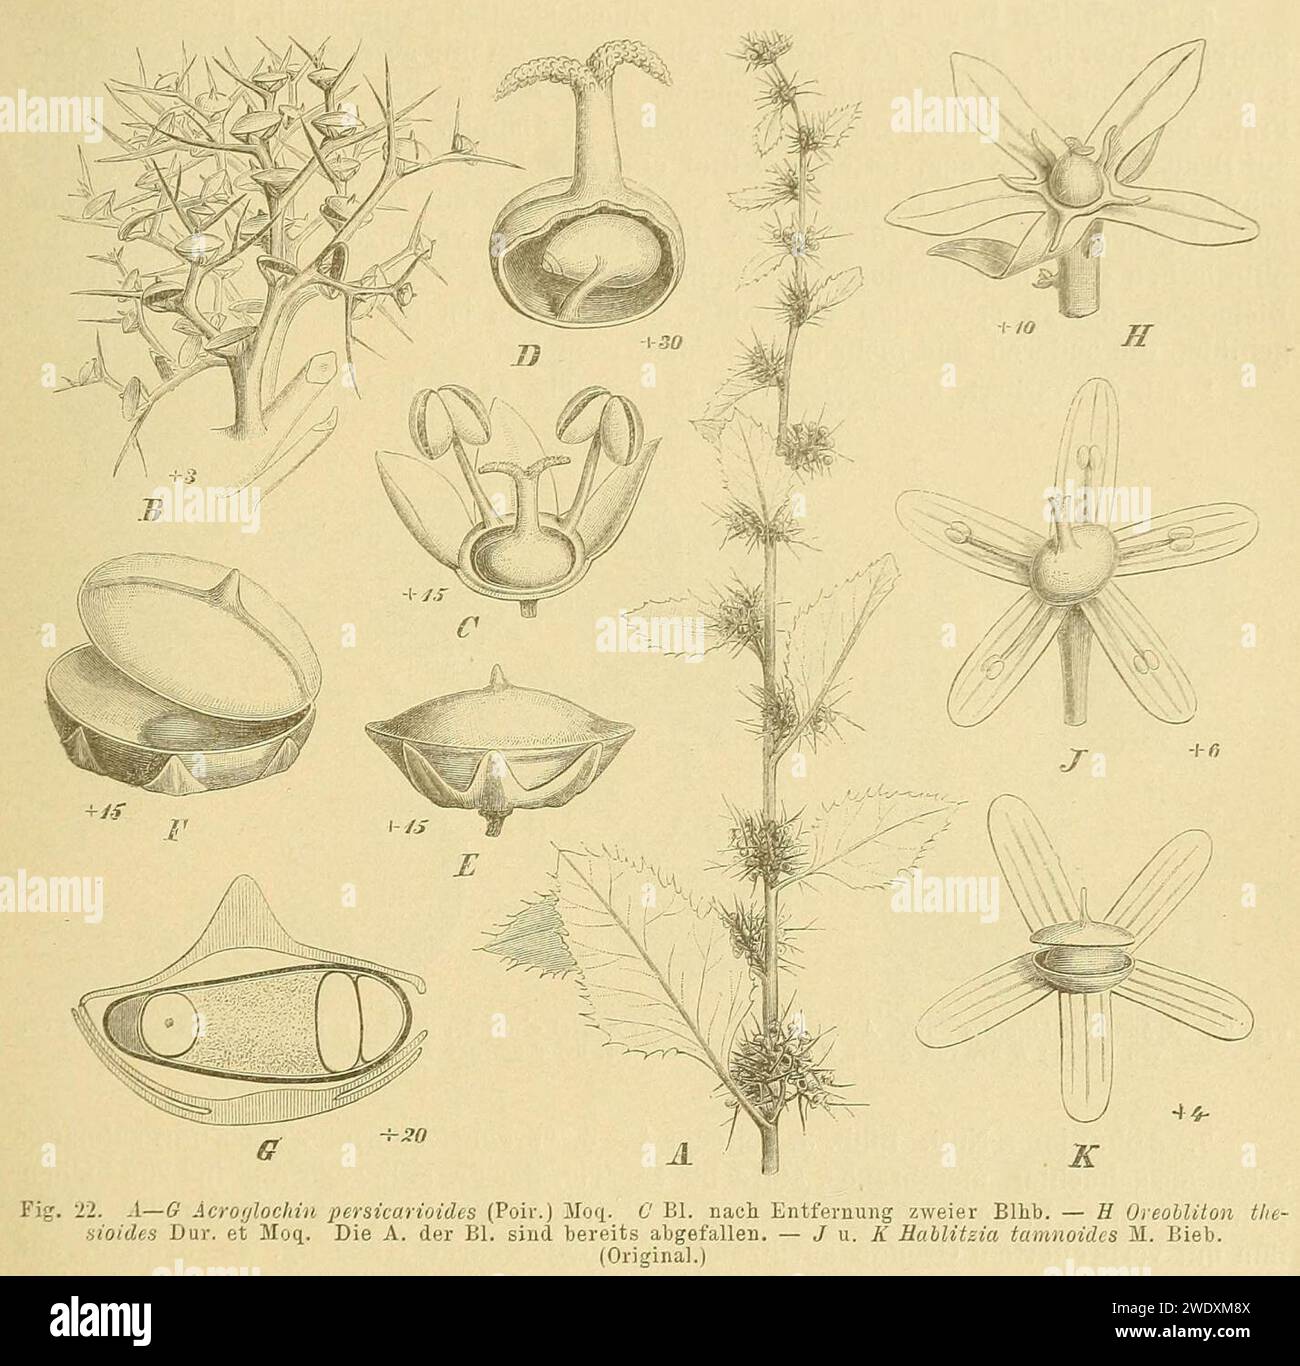 Acroglochin persicarioides, Oreobliton thesioides, Hablitzia tamnoides. Stock Photo